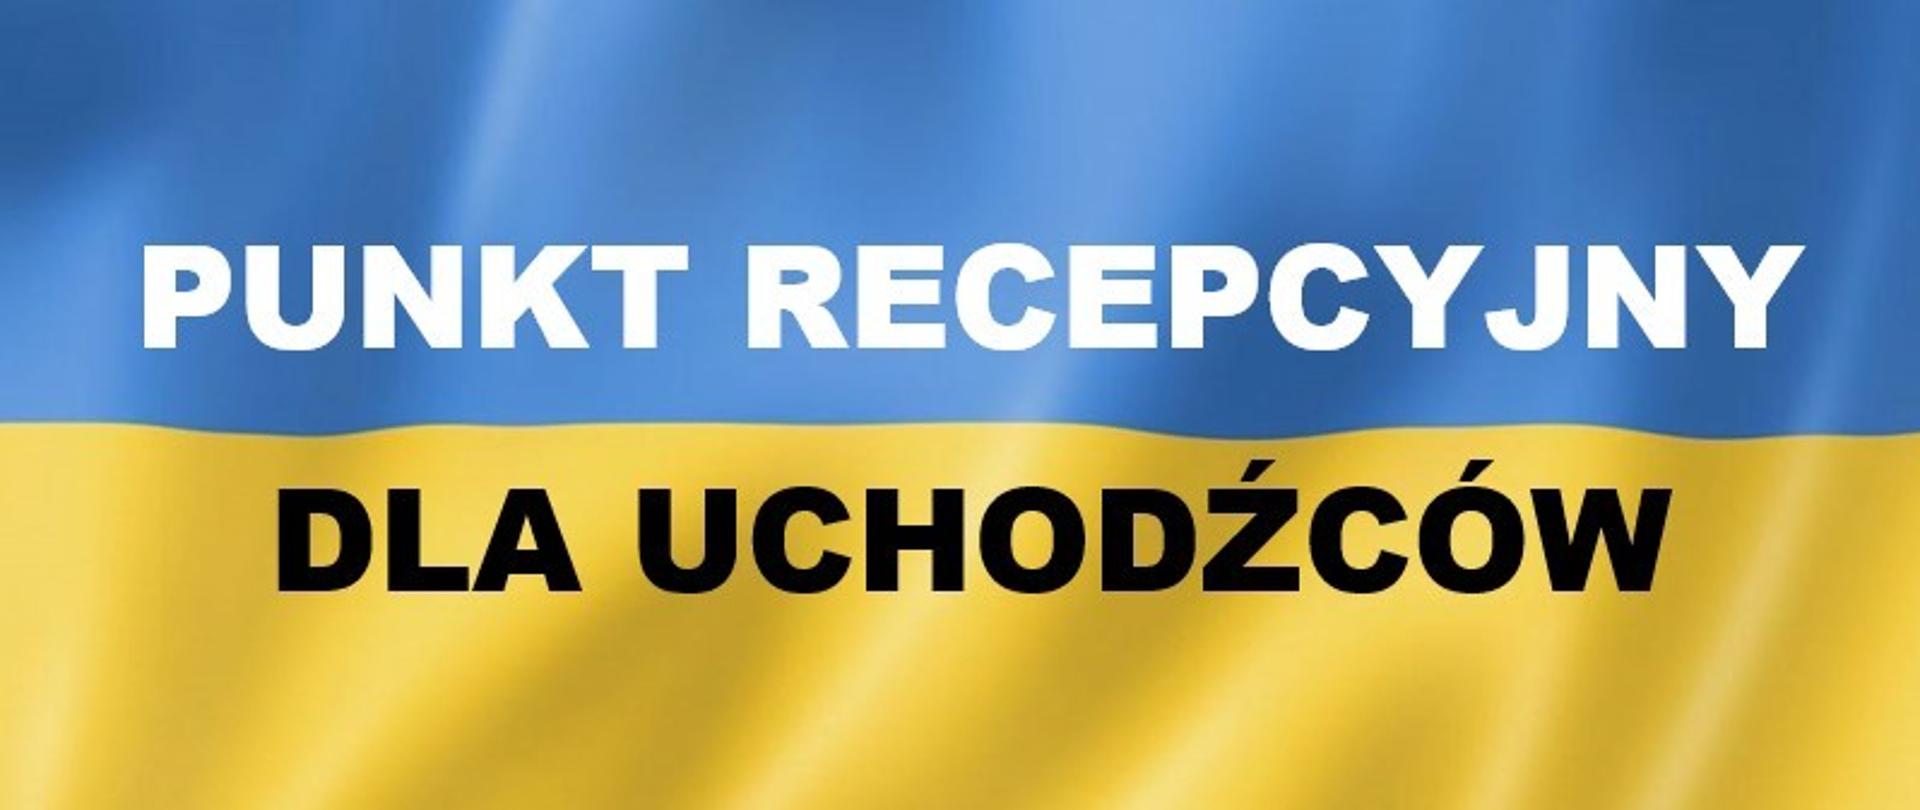 Flaga Ukrainy z napisem "Punkt recepcyjny dla uchodźców"